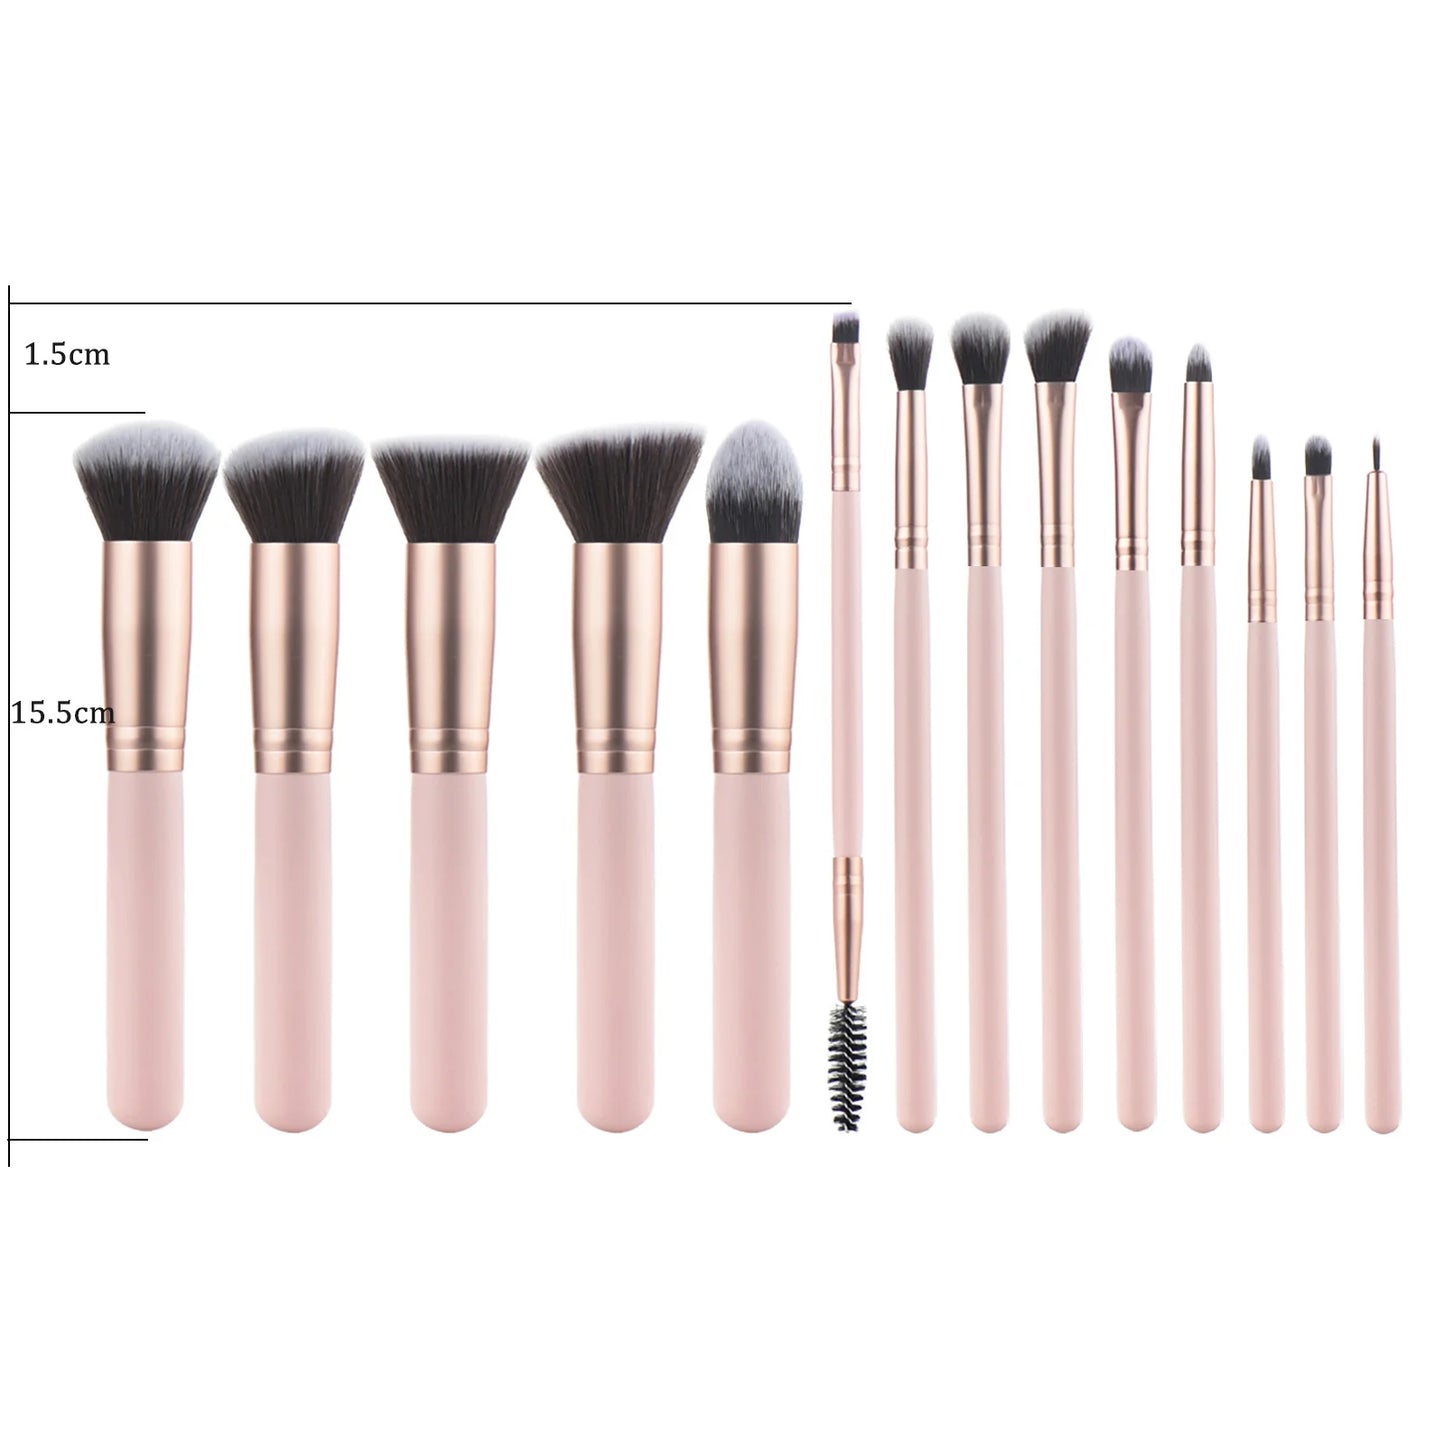 KOSMETYKI 14 Premium Pink Professional Makeup Brushes With Wooden Handles+ Makeup Sponge+Storage Bag Makeup Kit Set